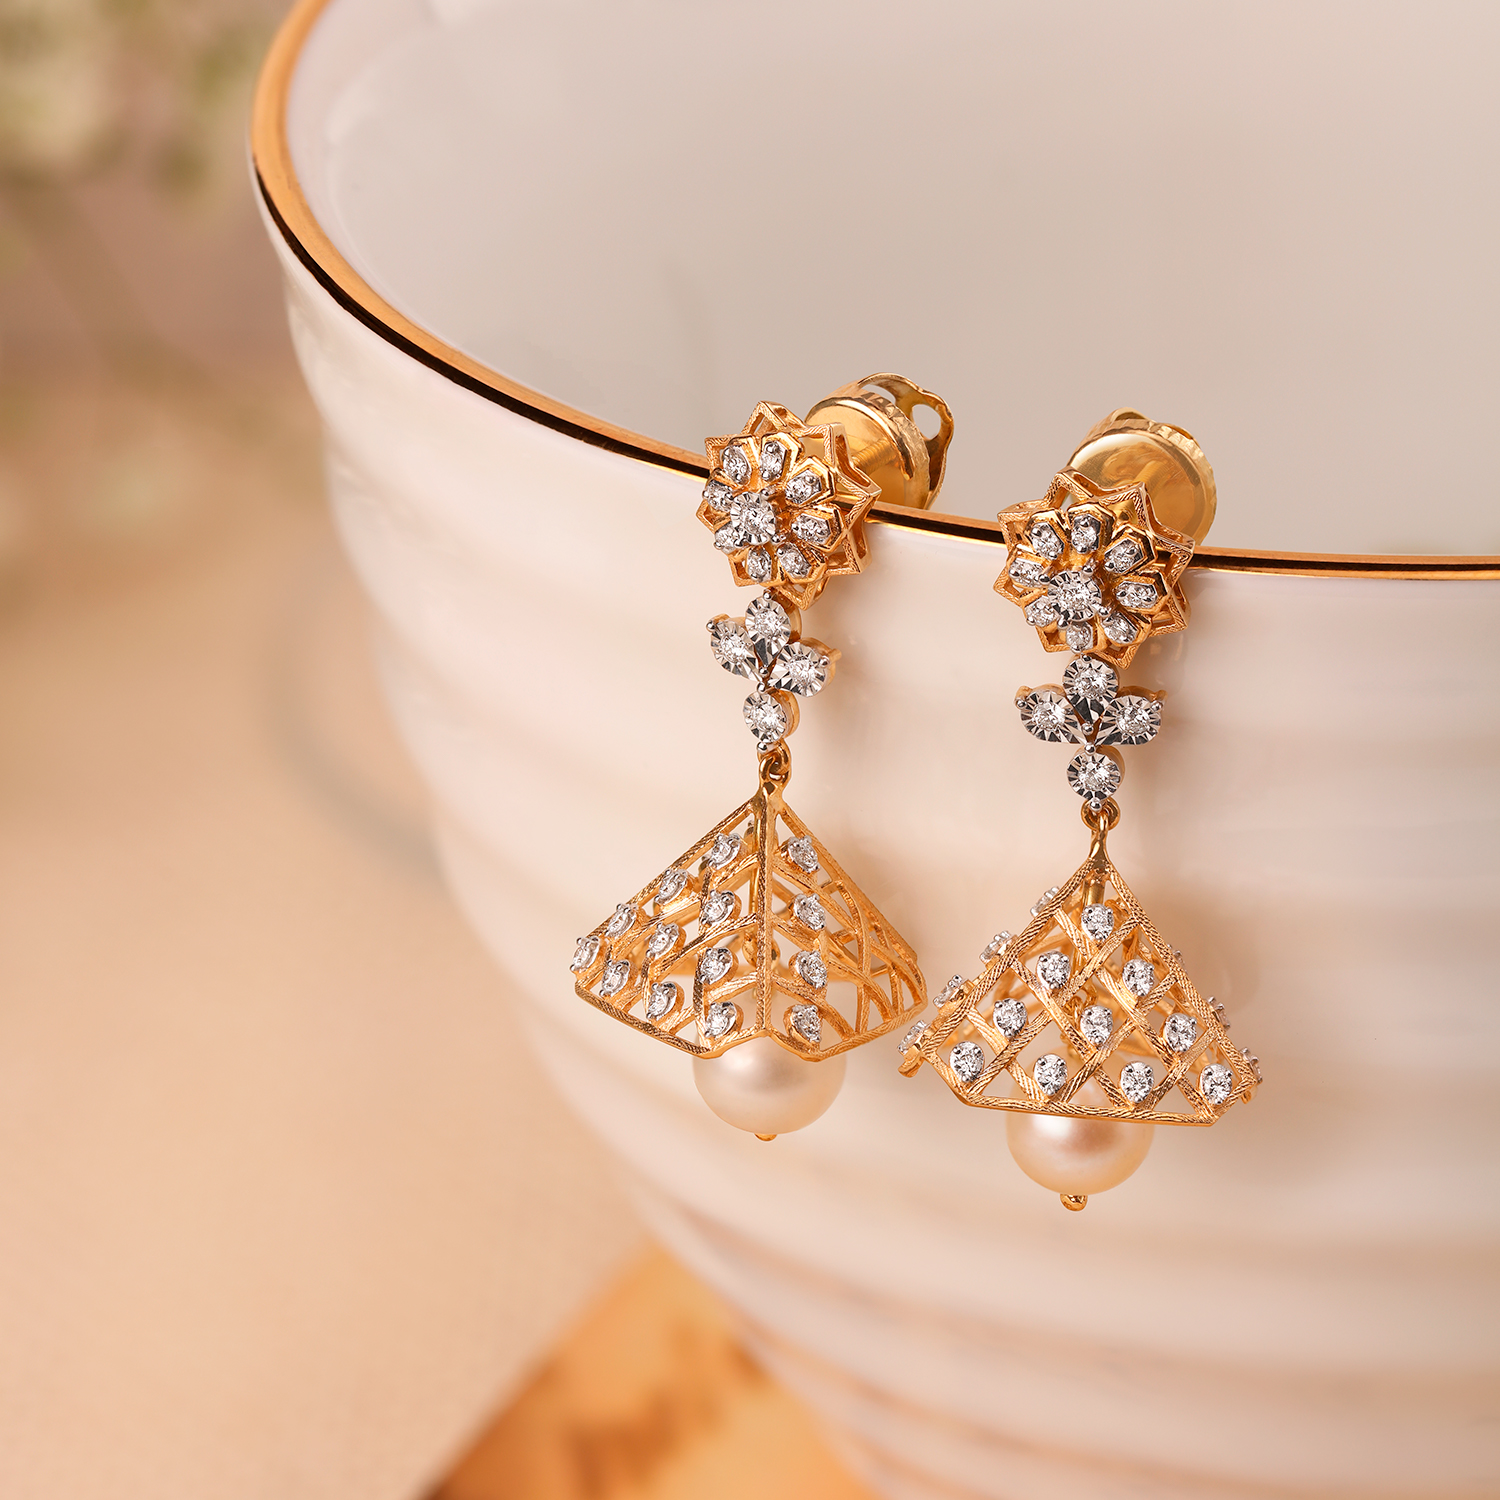 Lattice Diamond Studded Jhumkas with Pearls